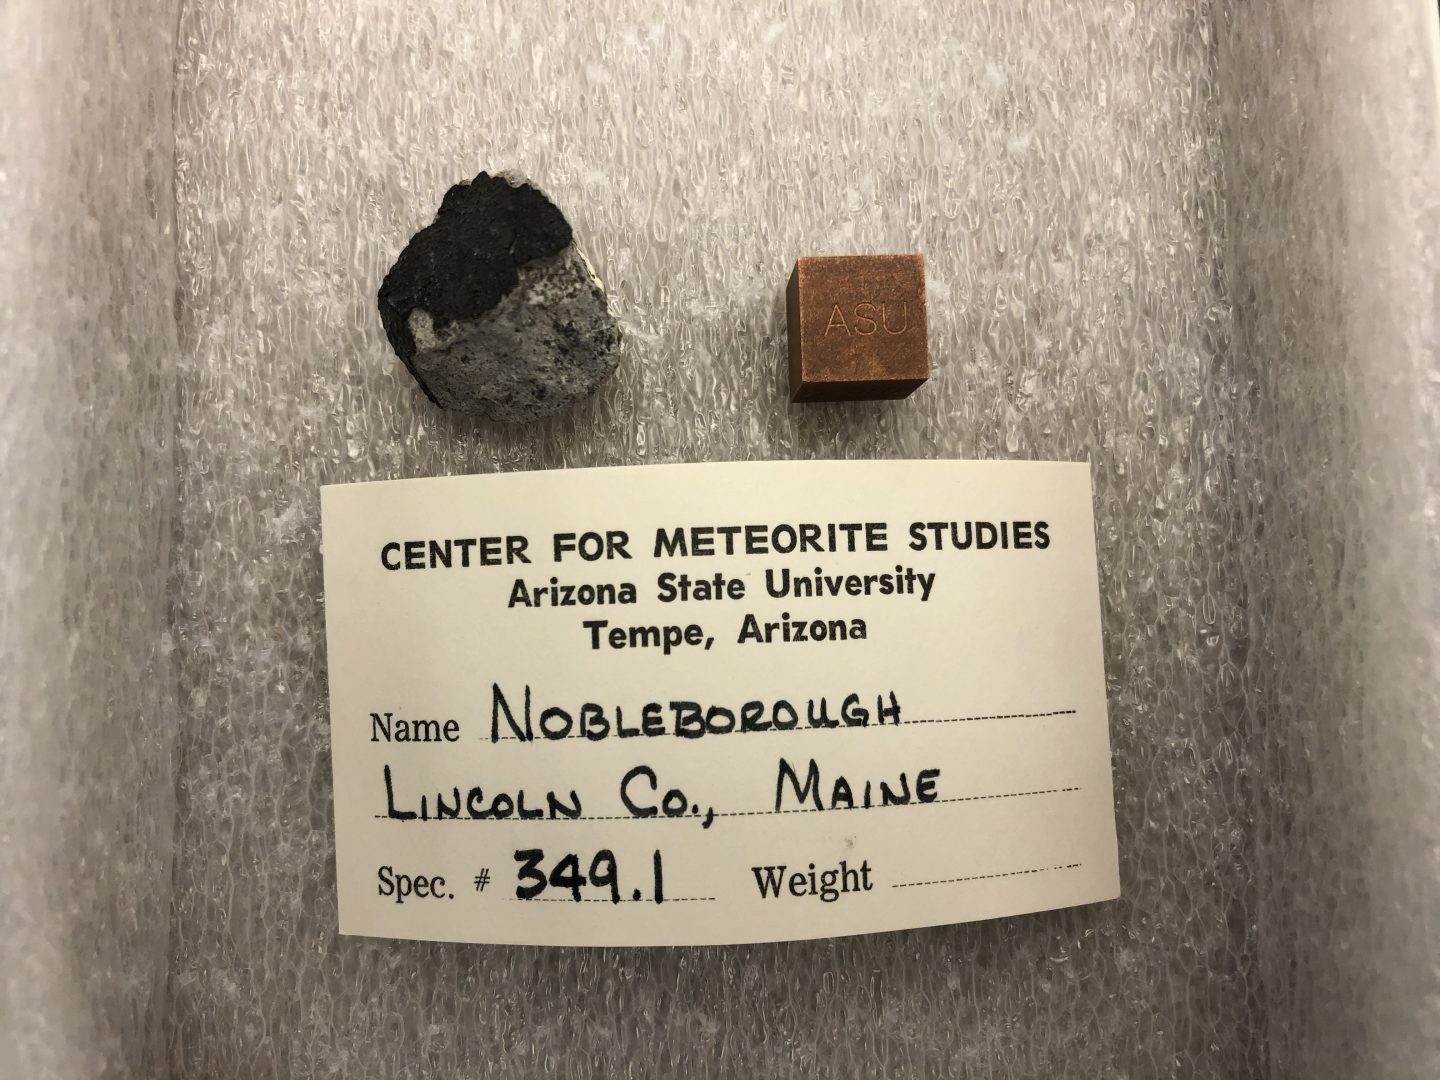 Nobleborough meteorite